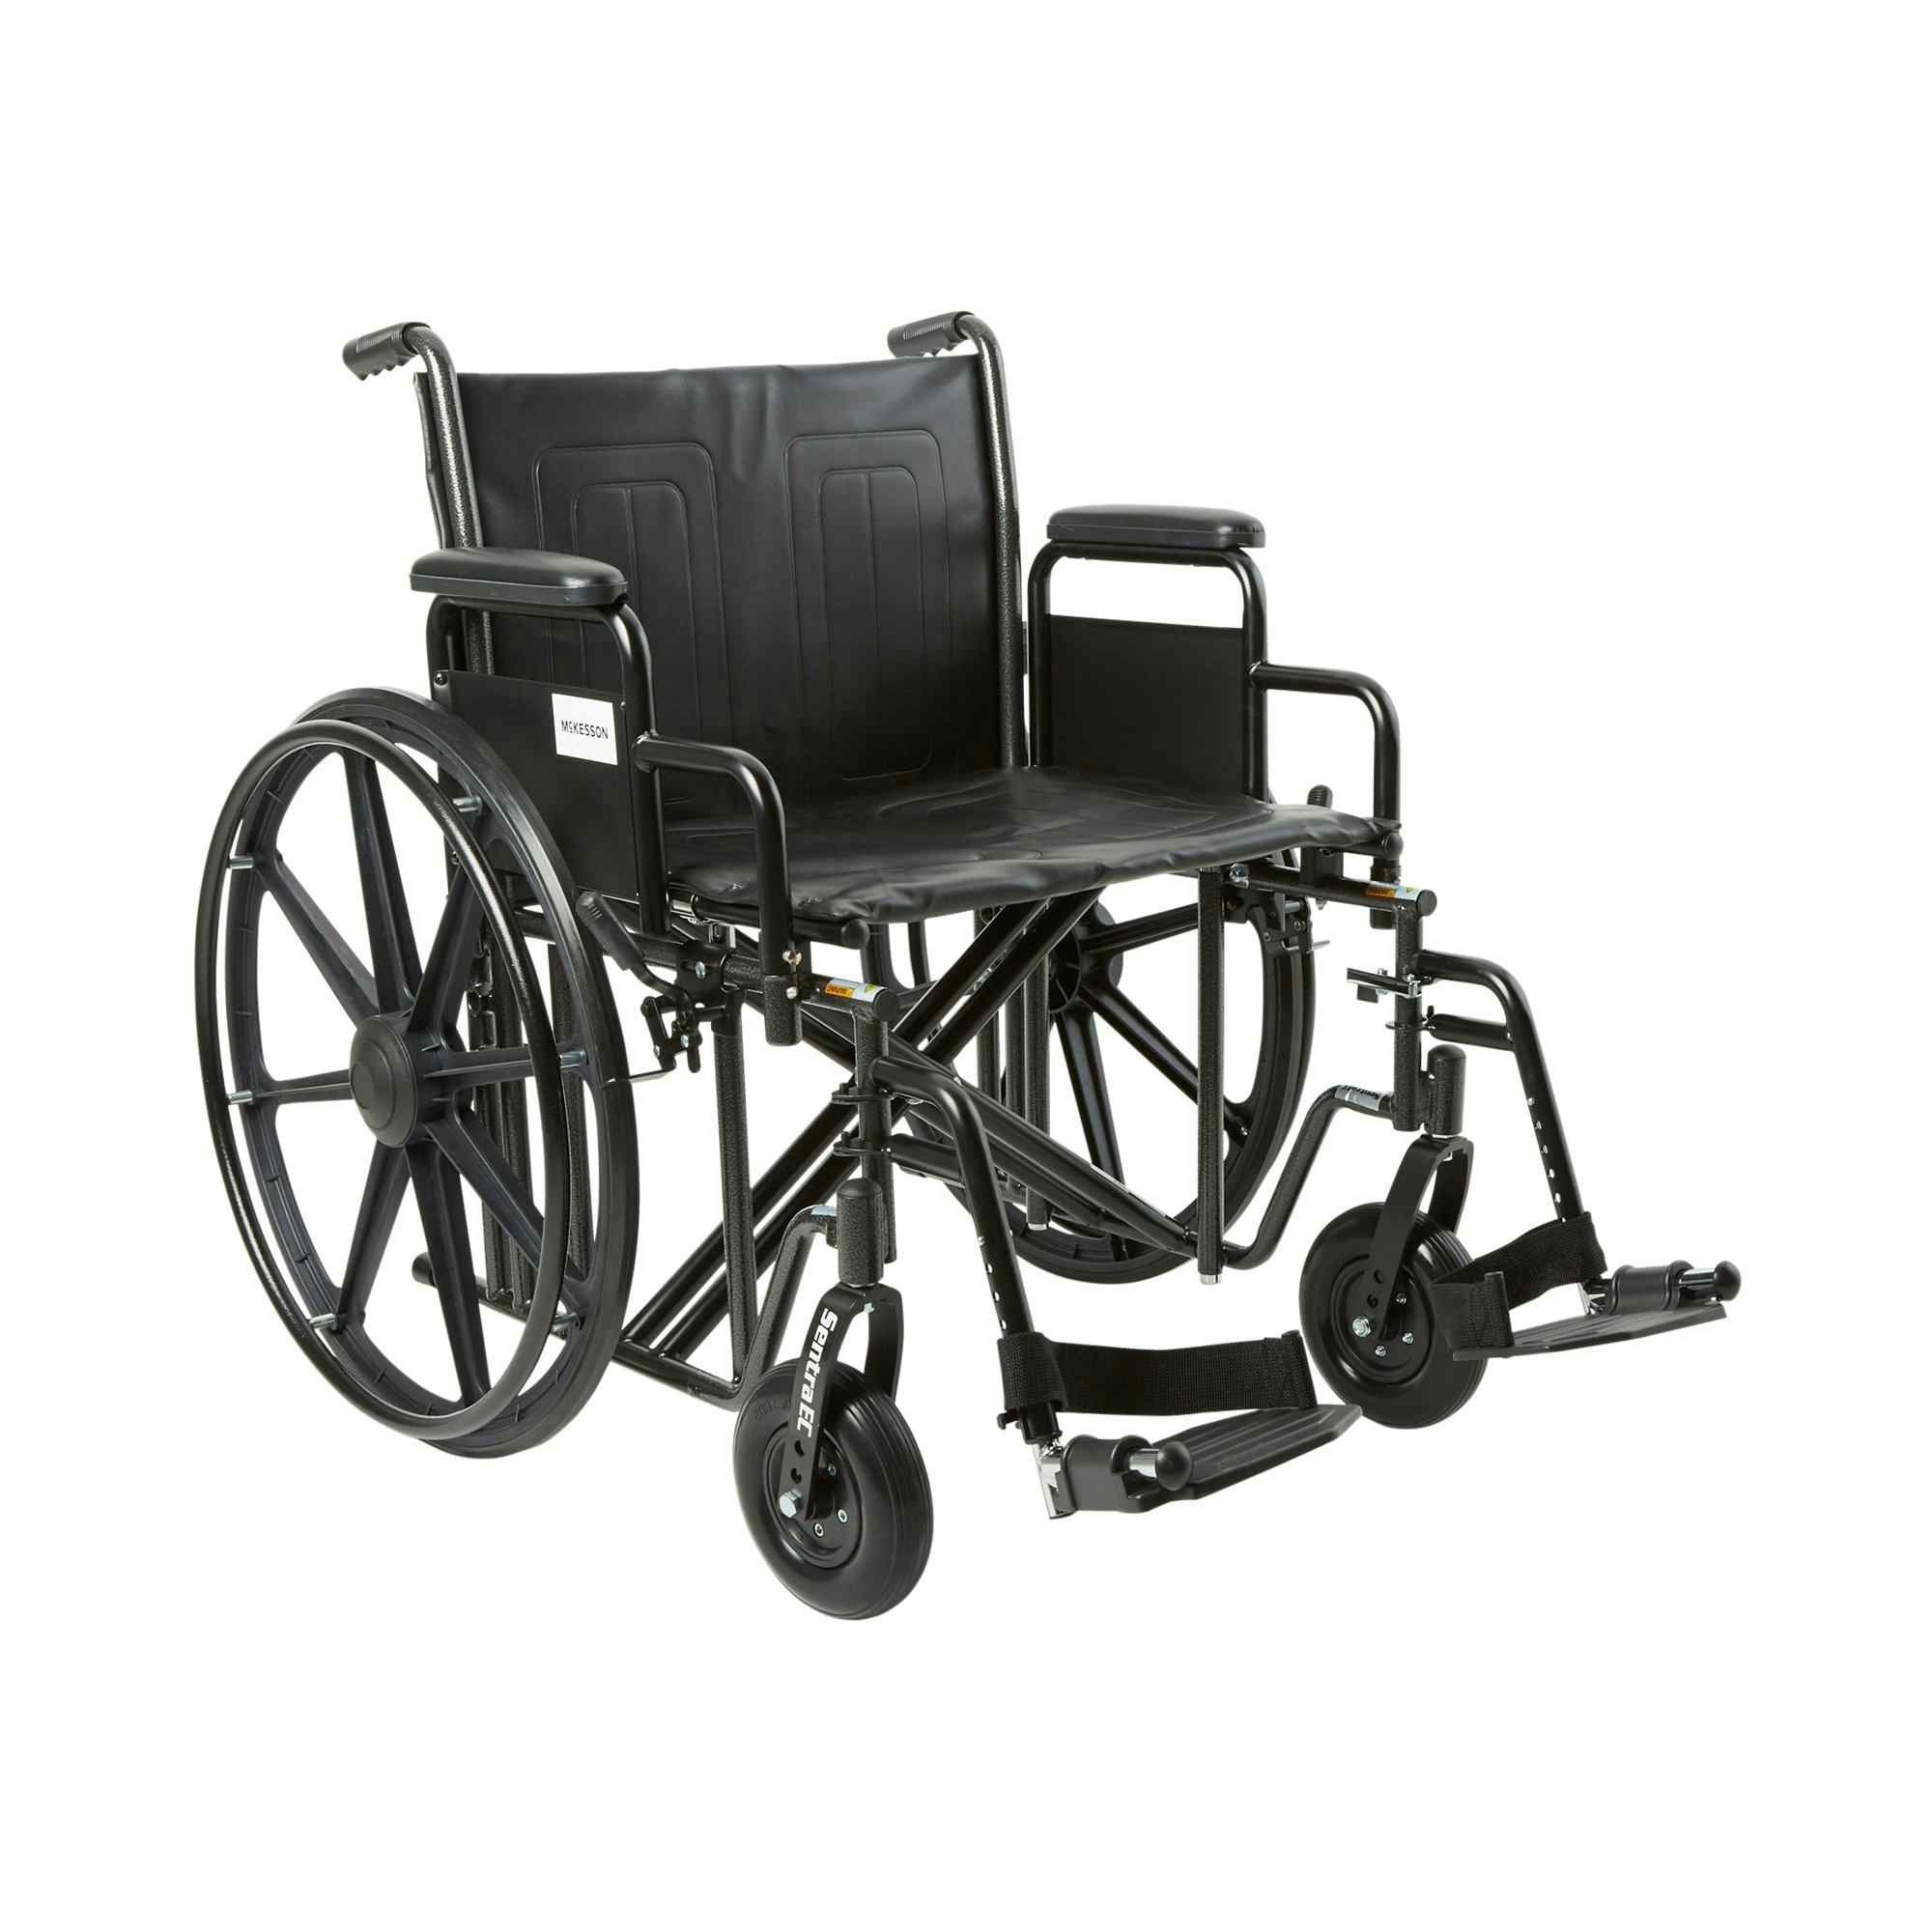 McKesson Bariatric Wheelchair with Swing-Away Elevating Legrest, 146-STD22ECDDA-SF, 22" Seat - 1 Each